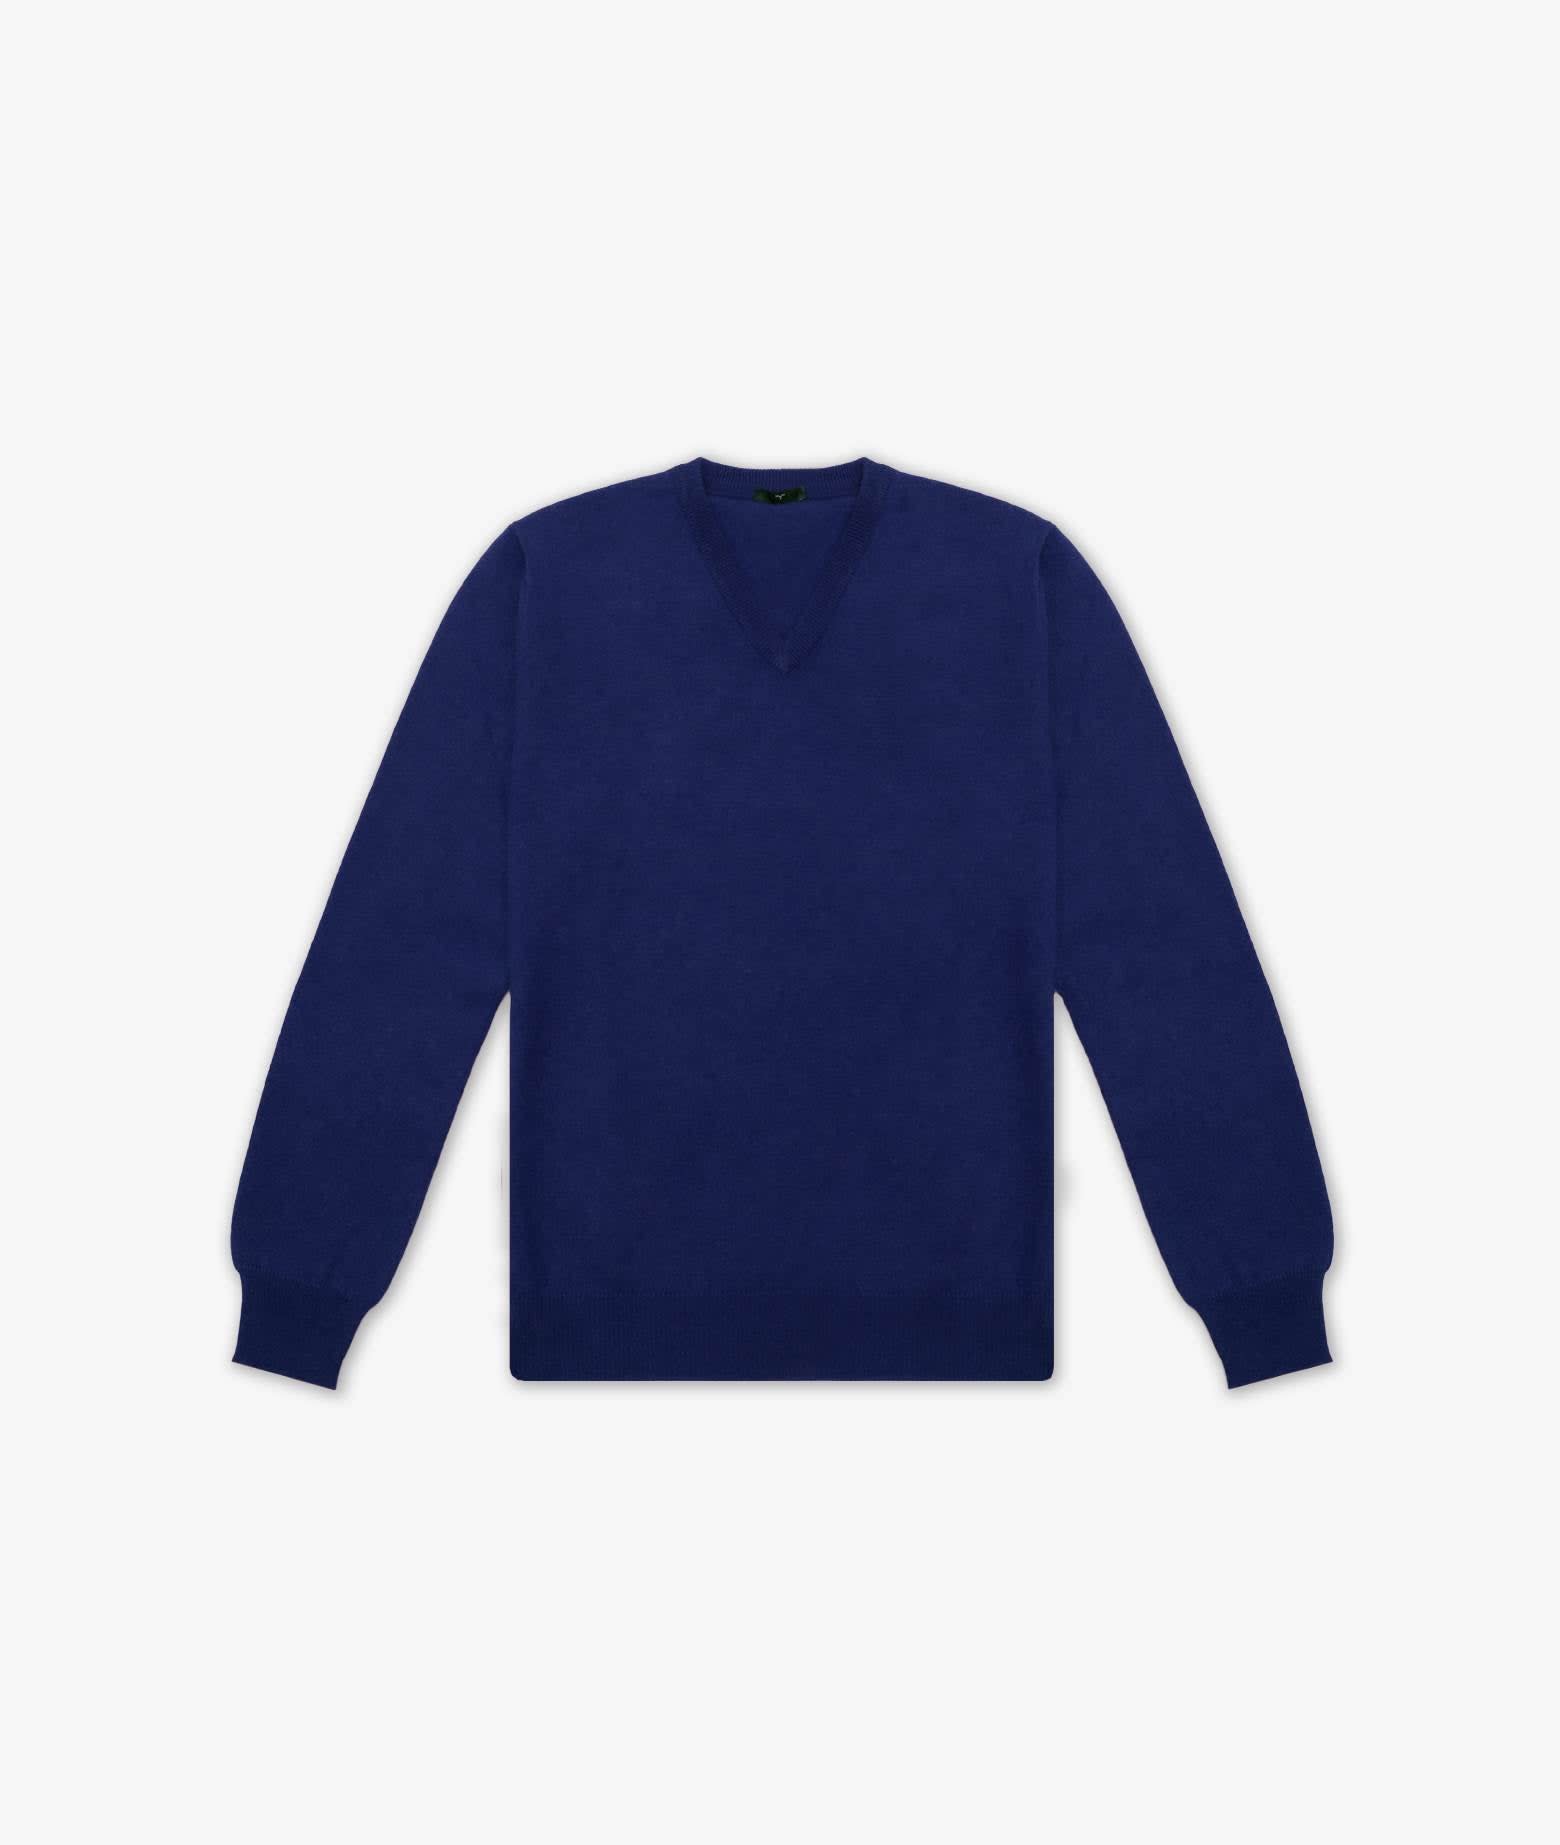 Larusmiani V-neck Sweater Bachelor Sweater In Light Blue